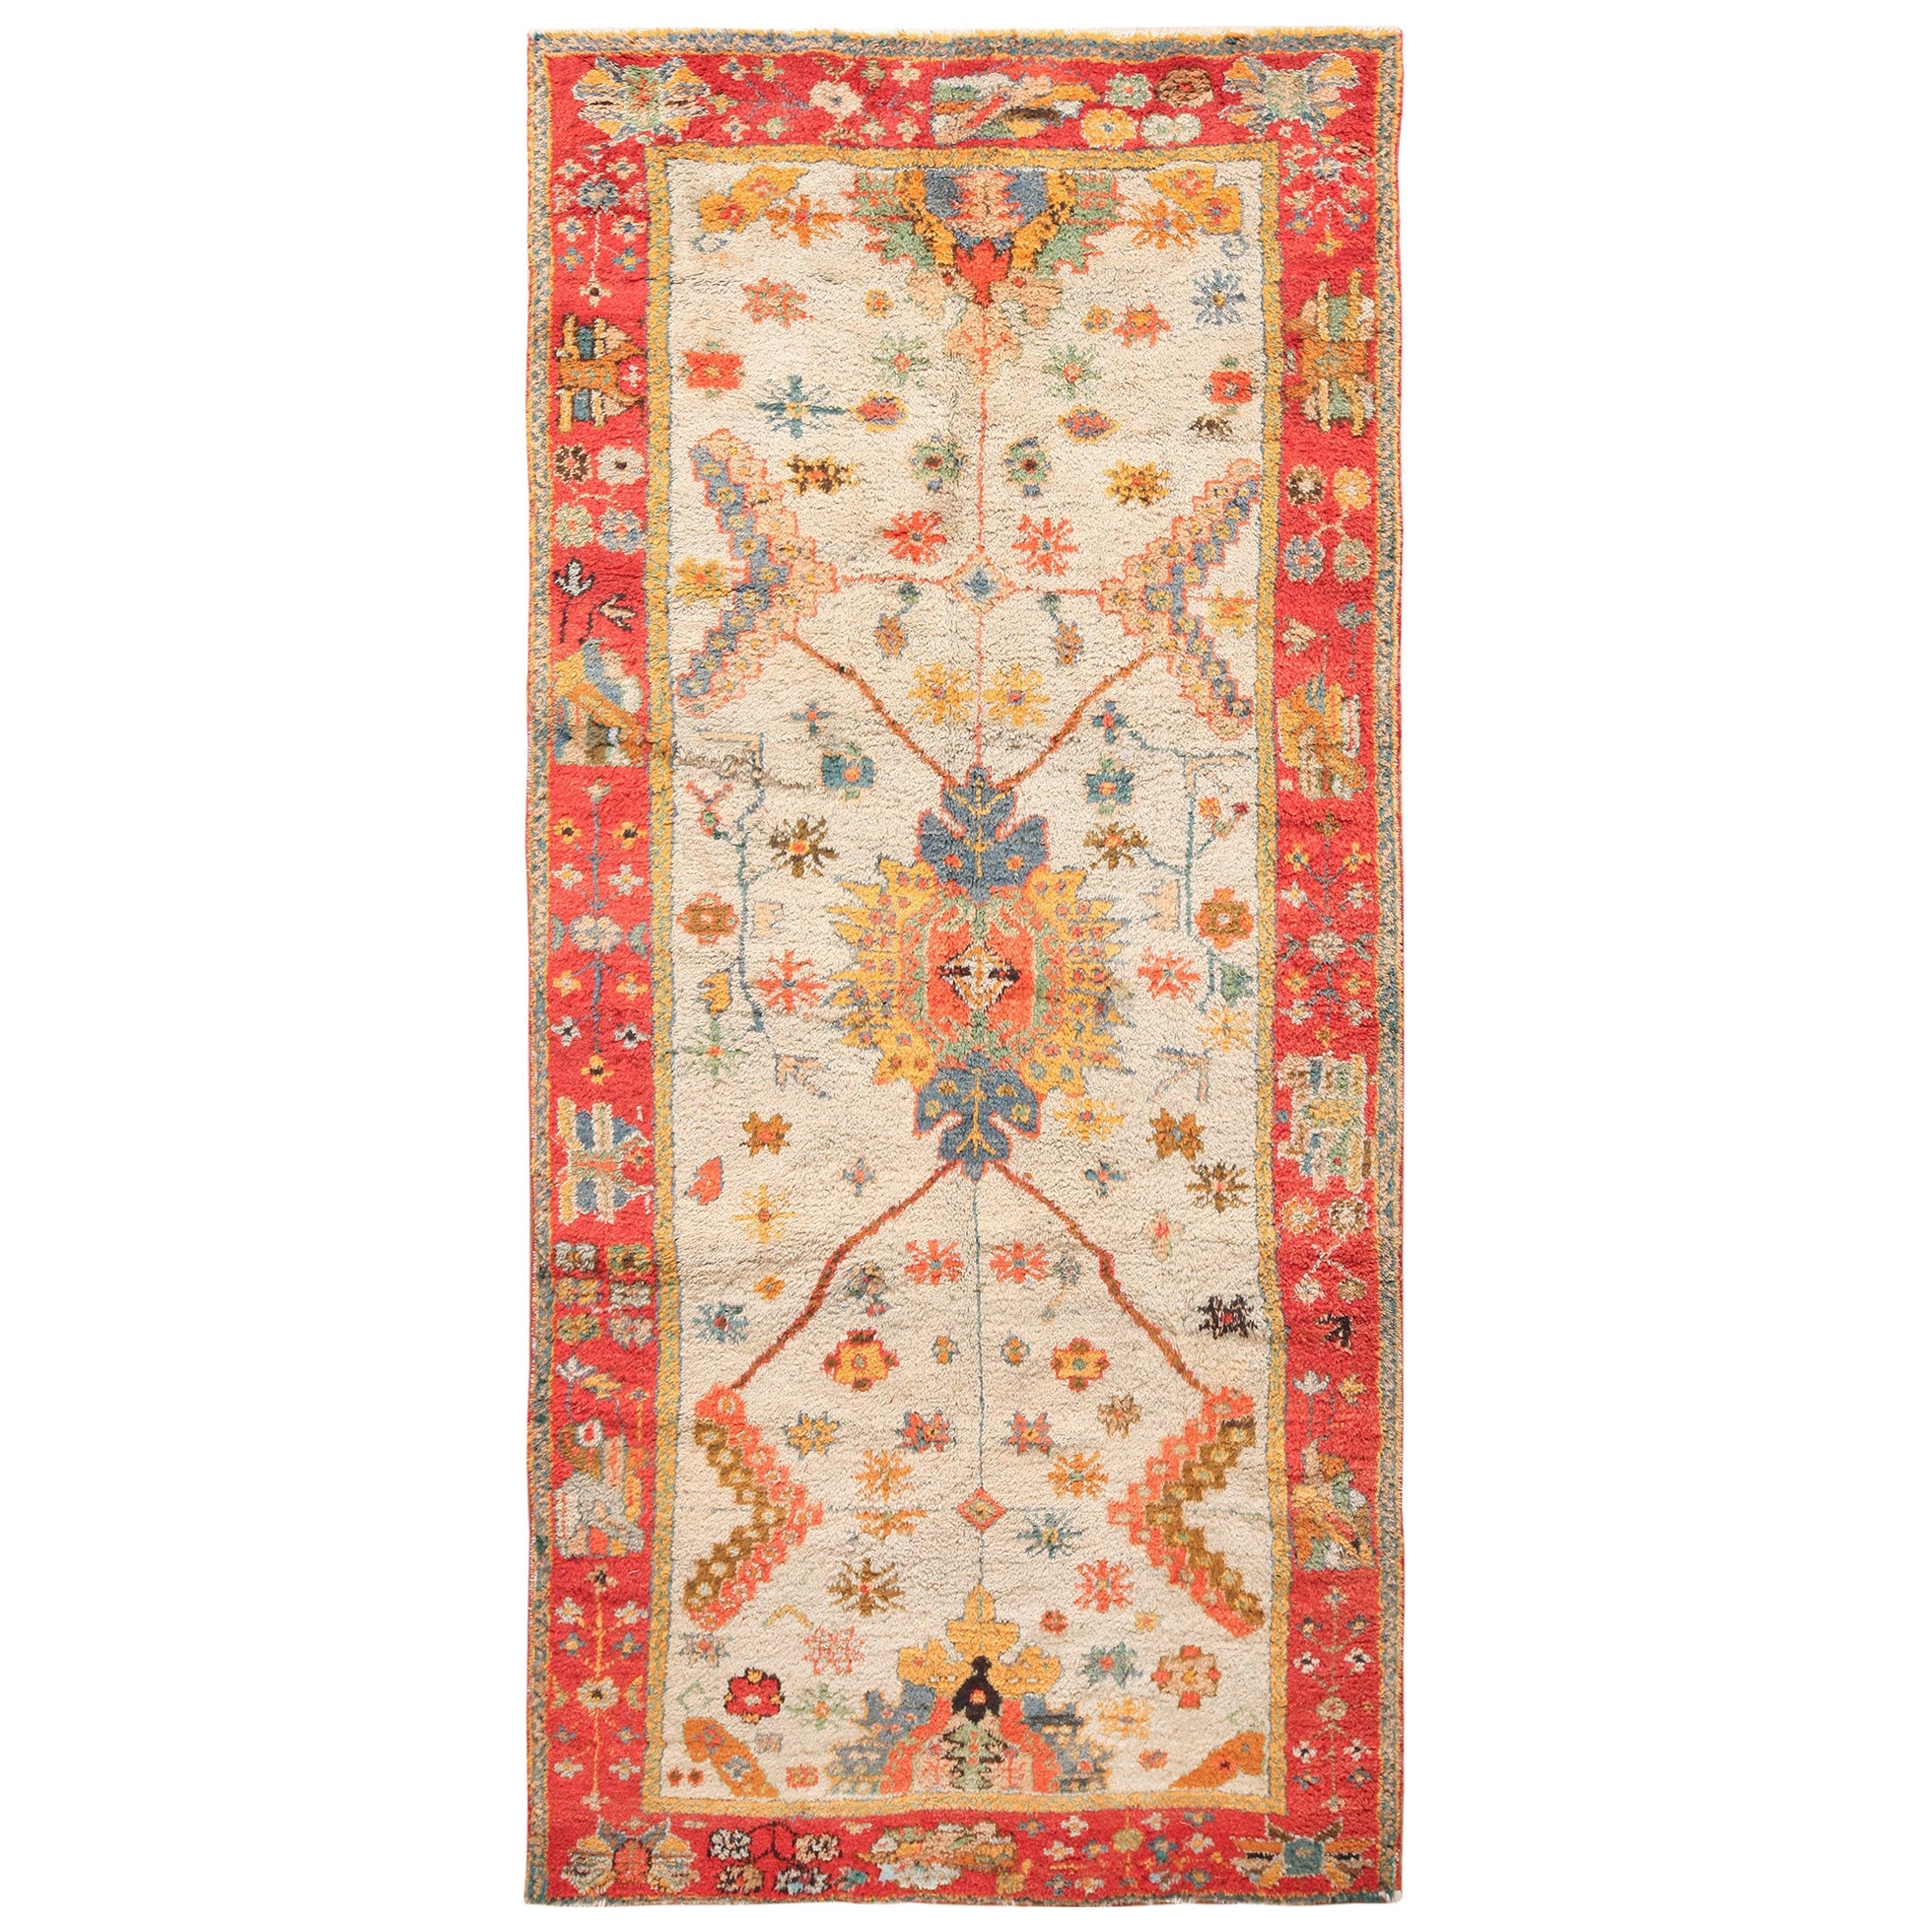 Antiker türkischer Oushak-Teppich im Arts and Crafts-Stil.5 Fuß 5 Zoll x 11 Fuß